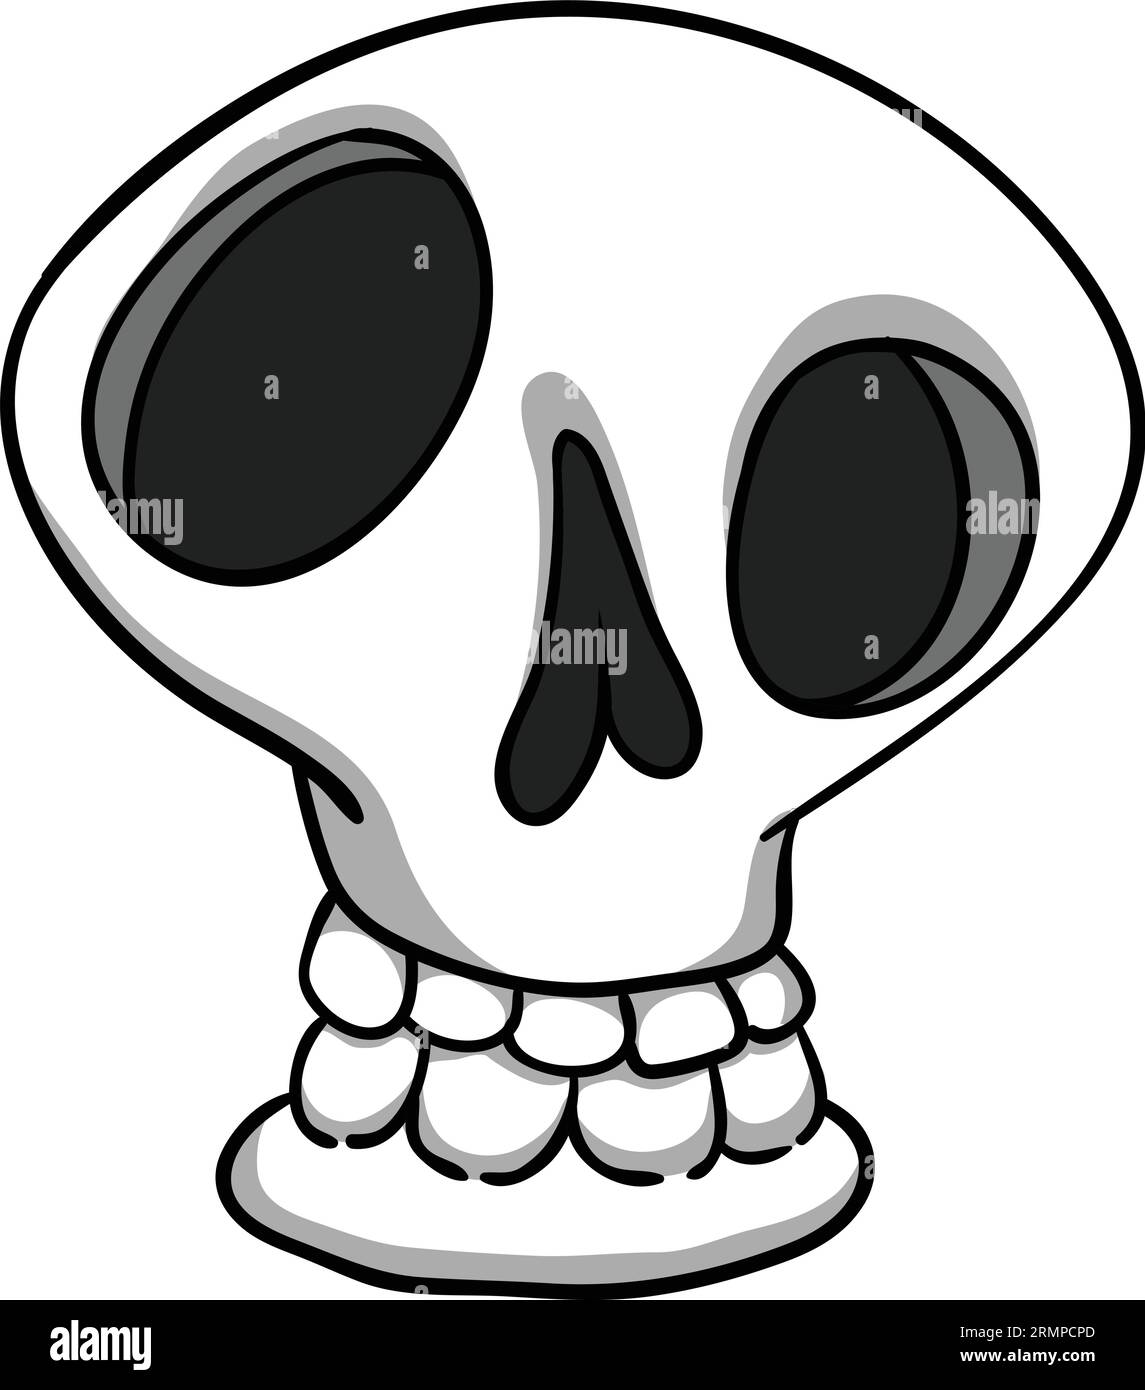 Personnage de dessin animé de faucheuse sinistre. Conception de squelette d'Halloween pour invitation de fête, affiche, logo ou icône. Illustration de la face du crâne vectoriel isolée Illustration de Vecteur